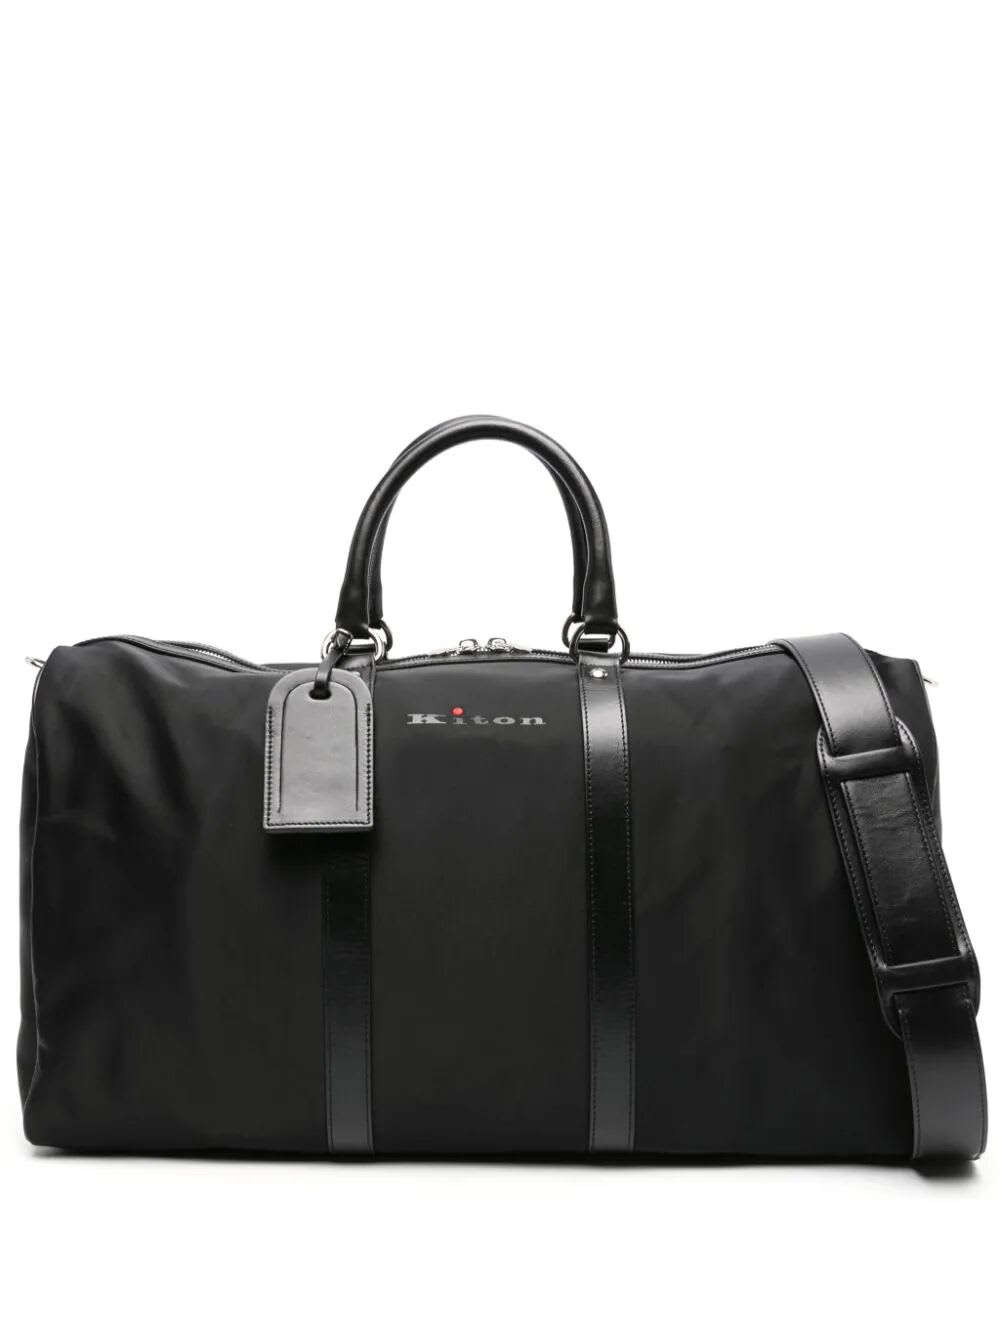 Kiton Luggage In Black